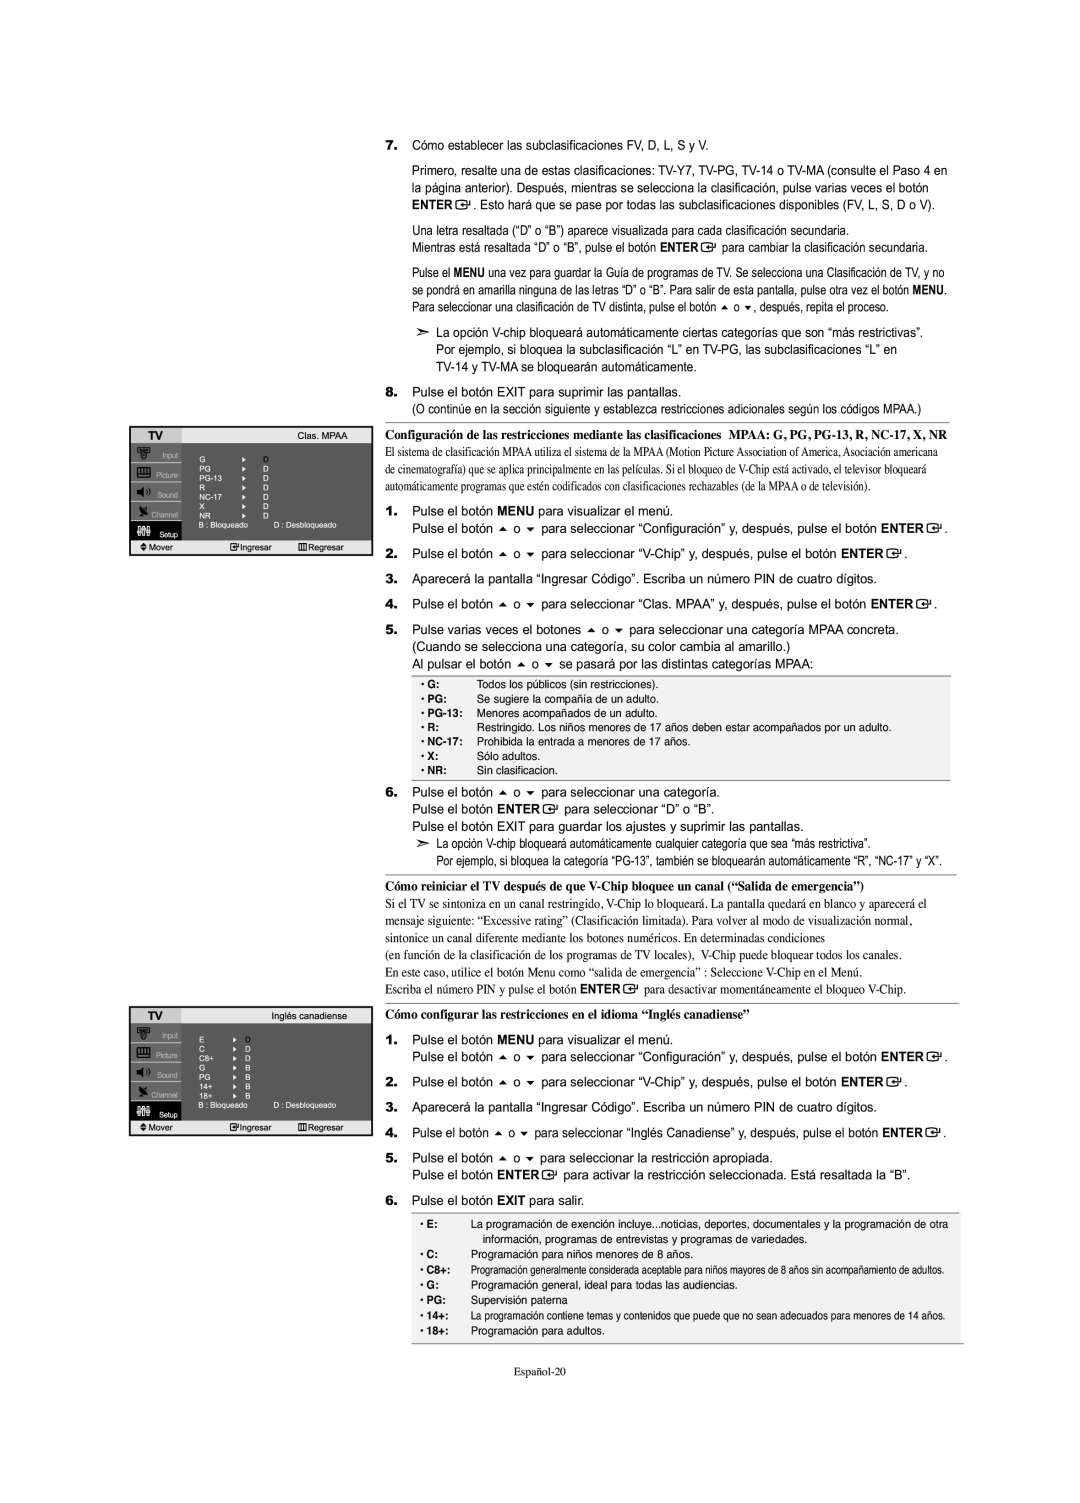 Samsung LN-S2341W manual Cómo configurar las restricciones en el idioma “Inglés canadiense” 